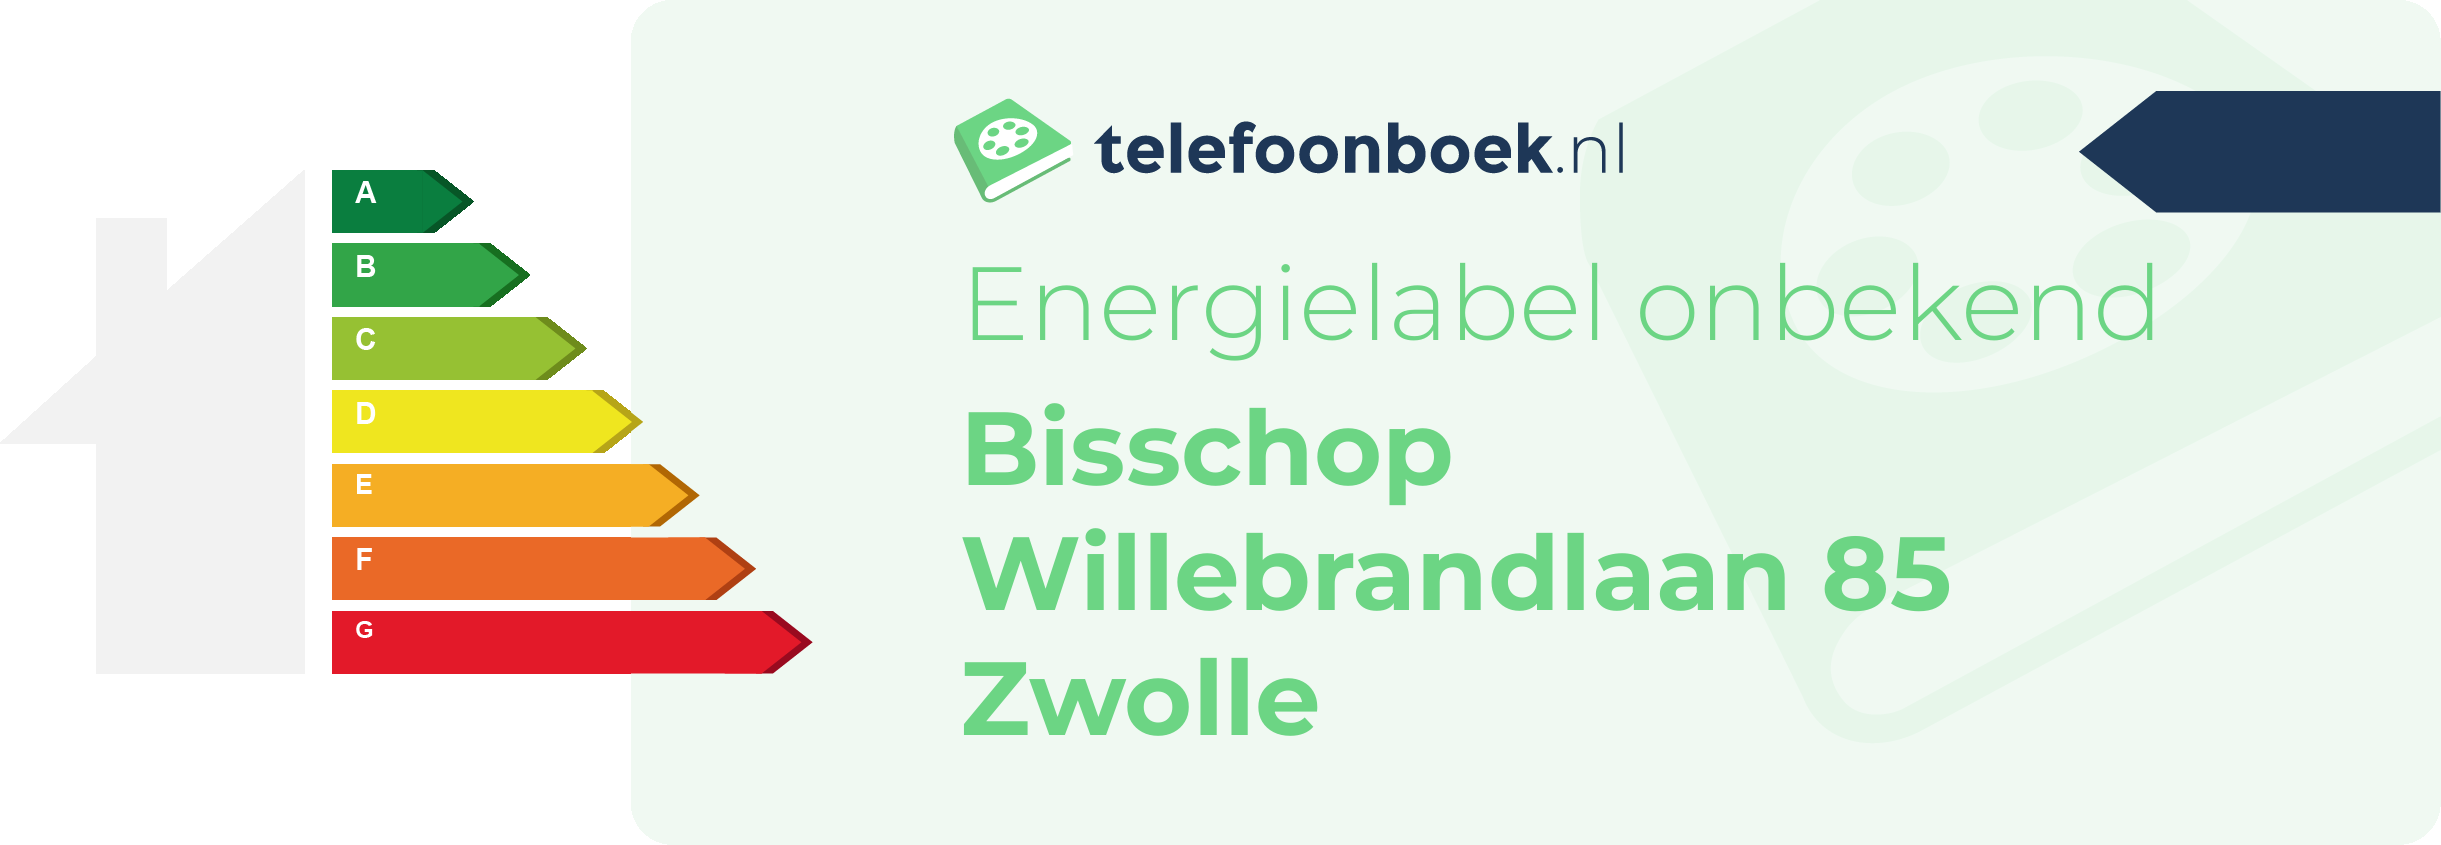 Energielabel Bisschop Willebrandlaan 85 Zwolle